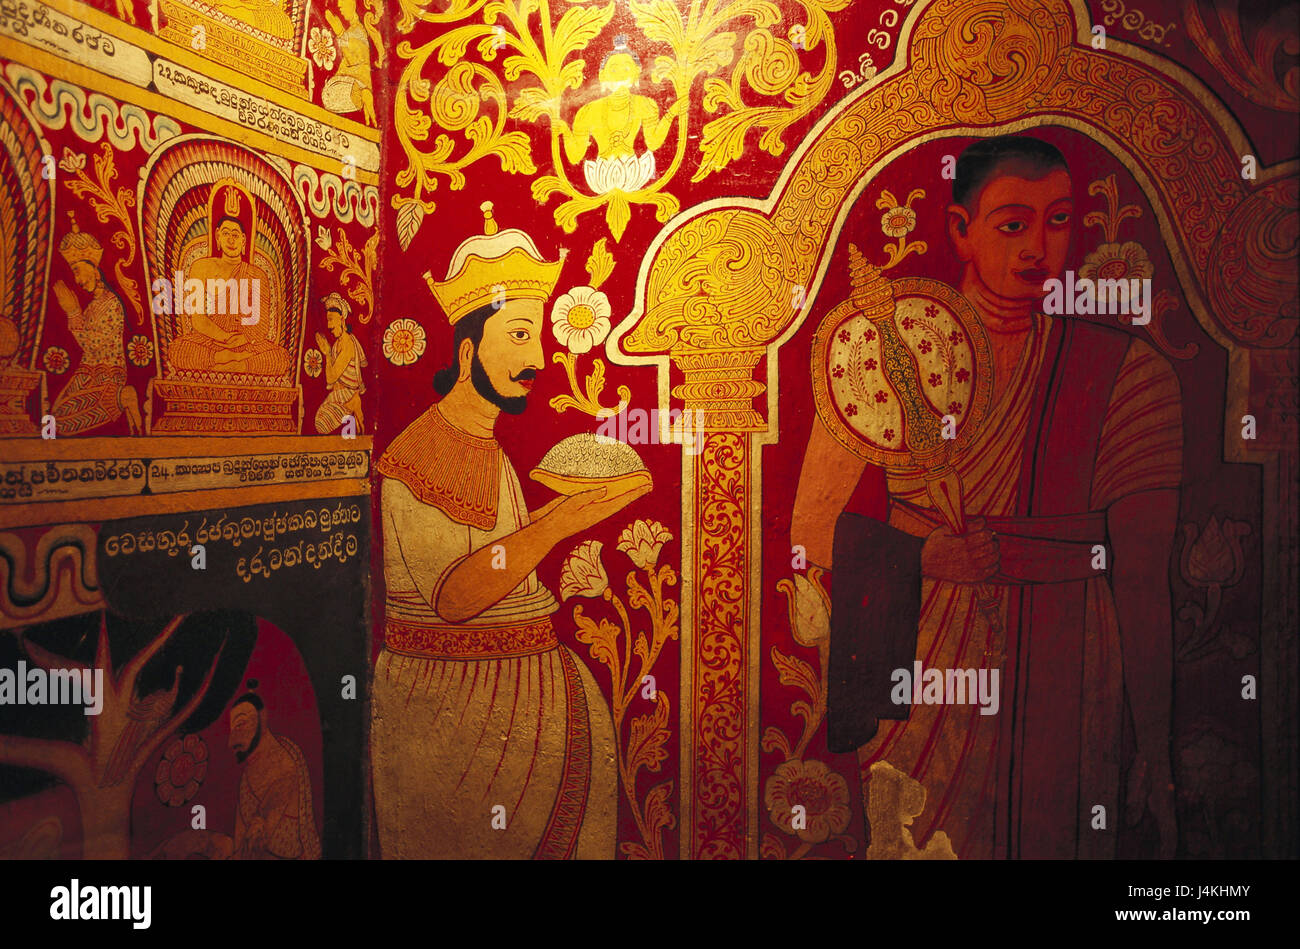 Sri Lanka, Kandy, temple du Saint cog, Dalada Maligawa, à l'intérieur, la peinture murale de l'Asie du Sud, île, île de l'état, province, capitale du district Central, point d'intérêt, de culte, temple en pièce jointe, le bouddhisme, la foi, la religion, le centre de pèlerinage, temples, Bouddhas relique cog Dalada Maligava, art, peinture, peinture murale Banque D'Images